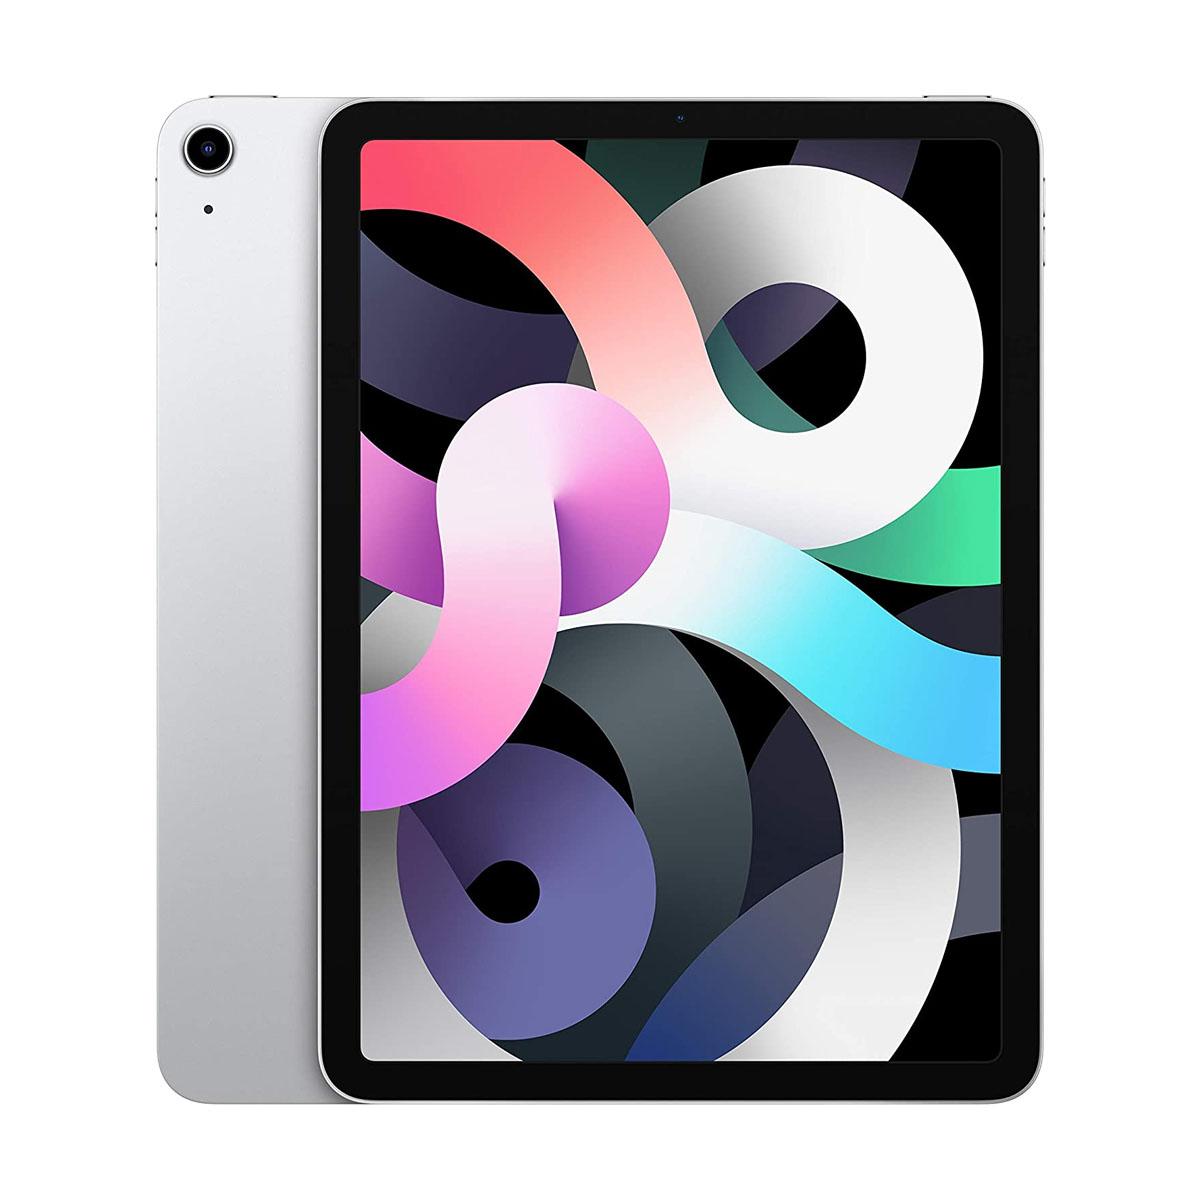 Apple iPad Air (4th Gen) 10.9-inch (Wi-Fi 64GB Storage) - Silver